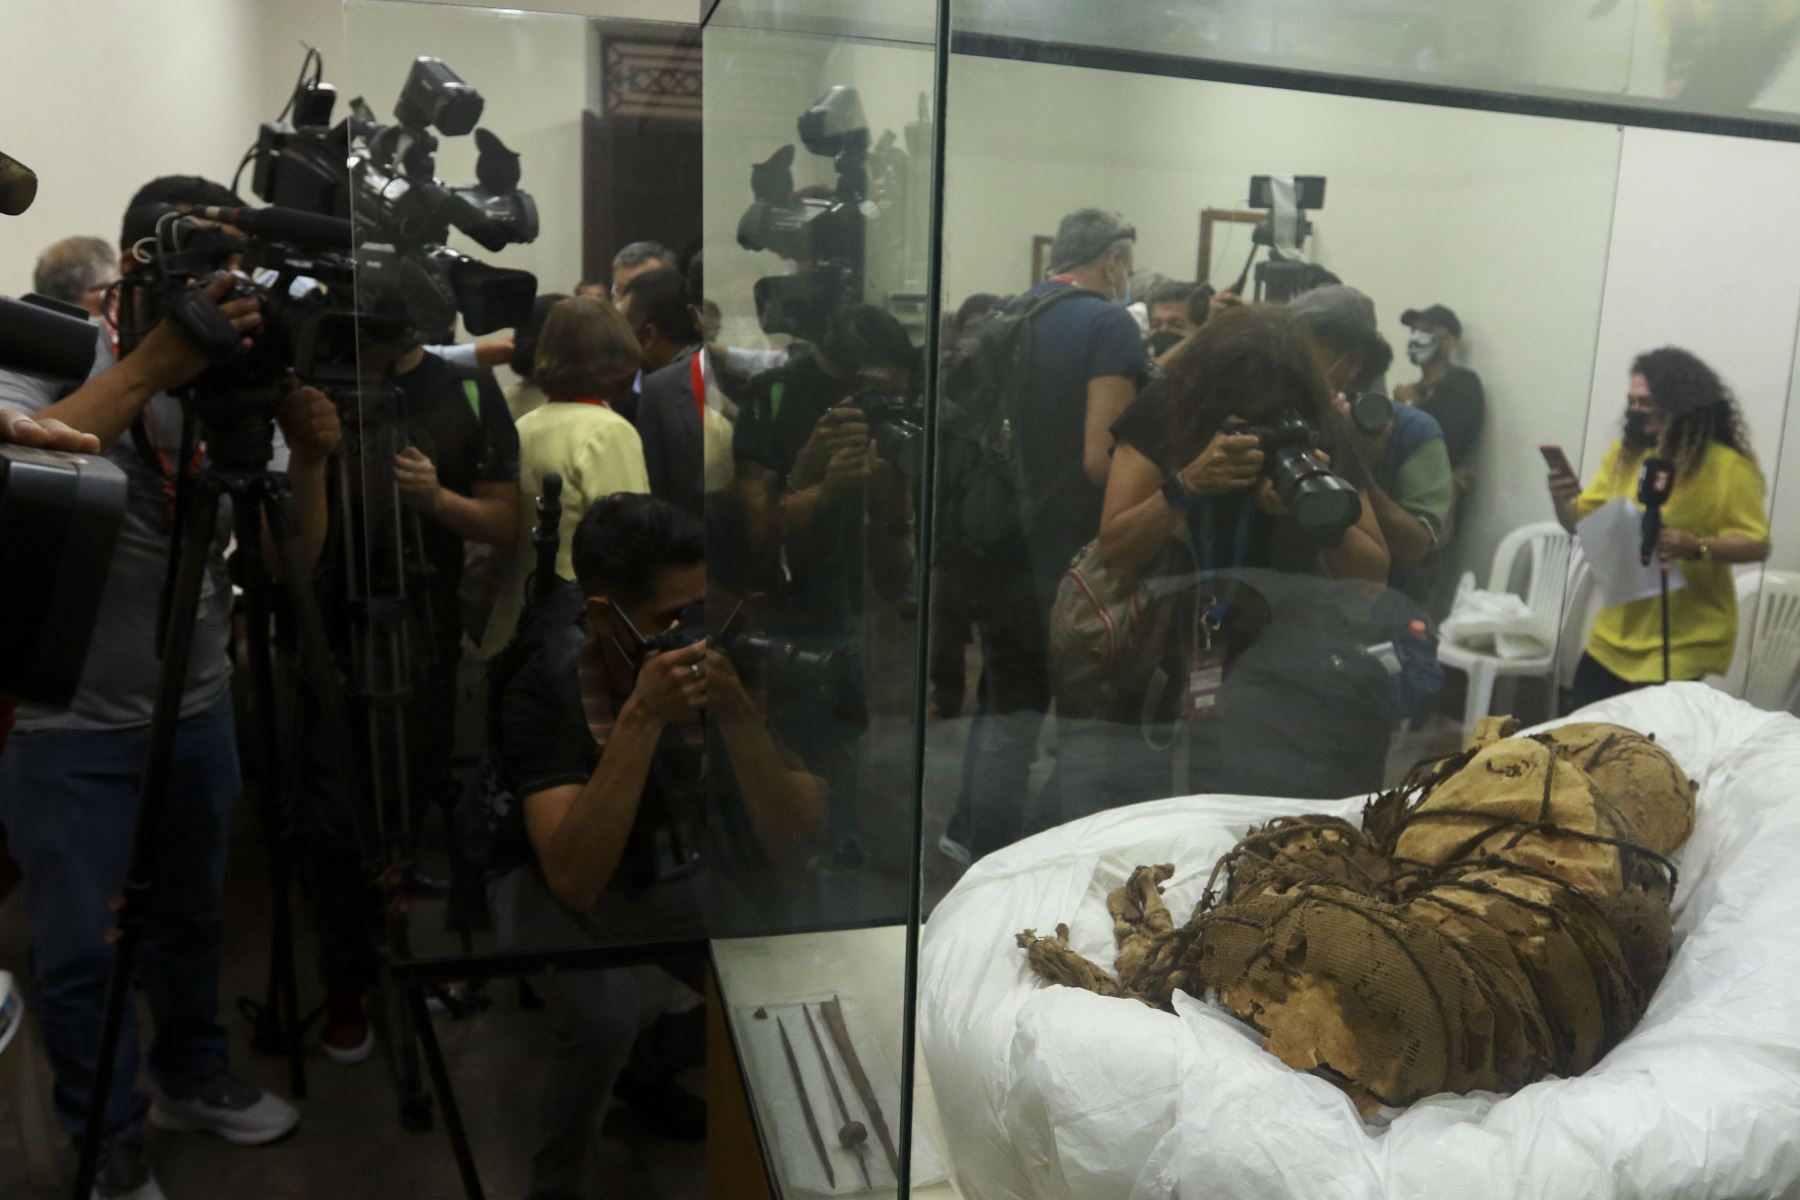 Universidad Nacional Mayor de San Marcos presenta al mundo a la "Momia de Cajamarquilla", hallada por arqueólogos sanmarquinos dentro de una cámara funeraria de unos tres metros de largo y a una profundidad de 1.40 metros en el sitio arqueológico Cajamarquilla, al este de Lima. Foto: ANDINA/Jhonel Rodríguez